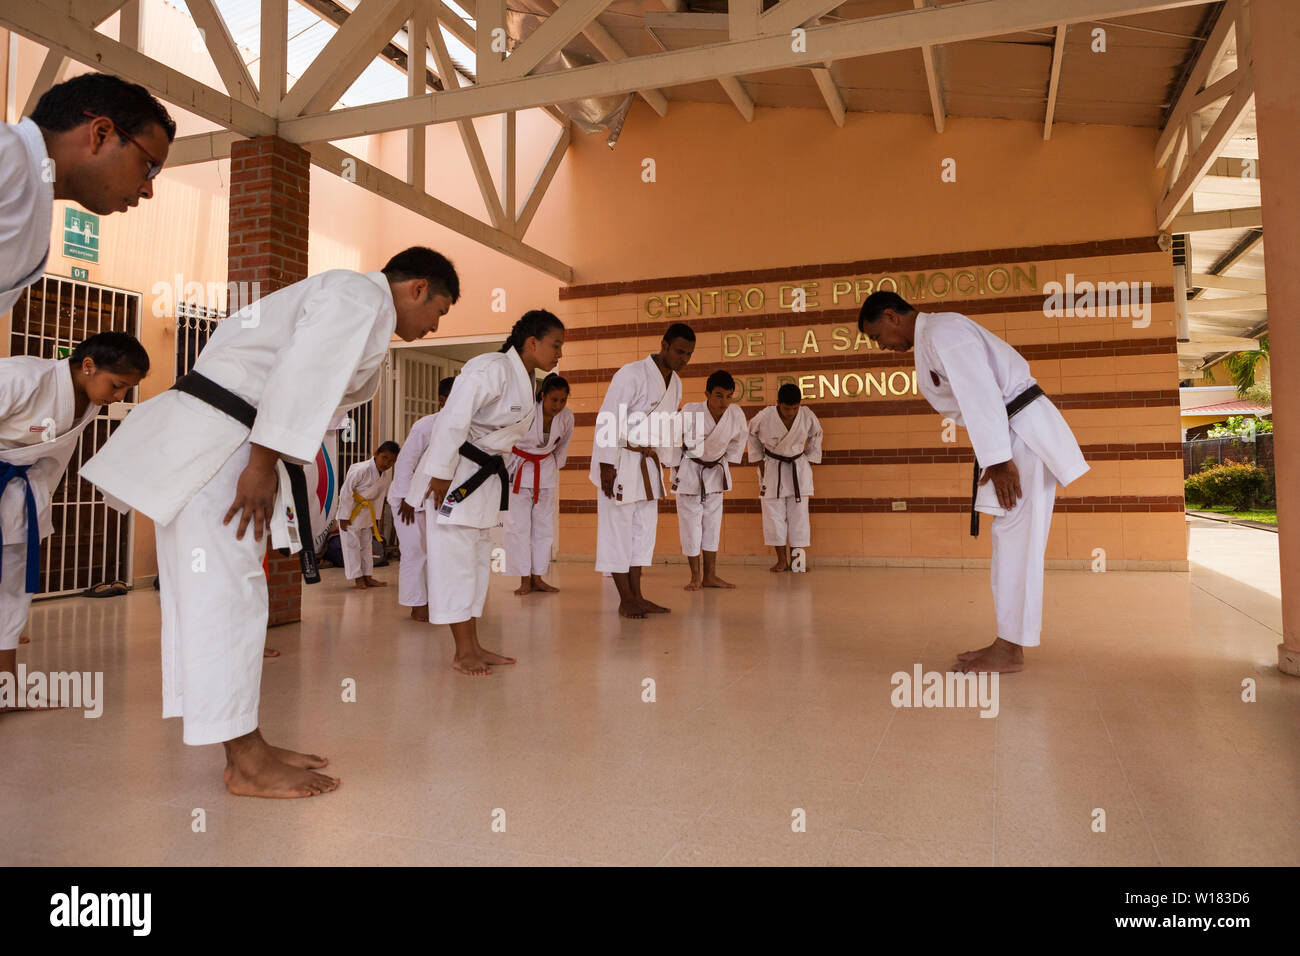 Sensei Carlos Martinez (rechts) ist die Lehre der Okinawanischen Gojo Ryu Karate in Penonome, Provinz Cocle, Republik Panama. Die karate Schule wurde von Sensei Carlos Martinez, der sich im Februar 2017 übergeben. Sensei Carlos ist im Bild rechts. Die Schule wurde ein Teil der IOGKF, International Okinawan Goju Ryu Karate Federation. Oktober, 2013. Stockfoto